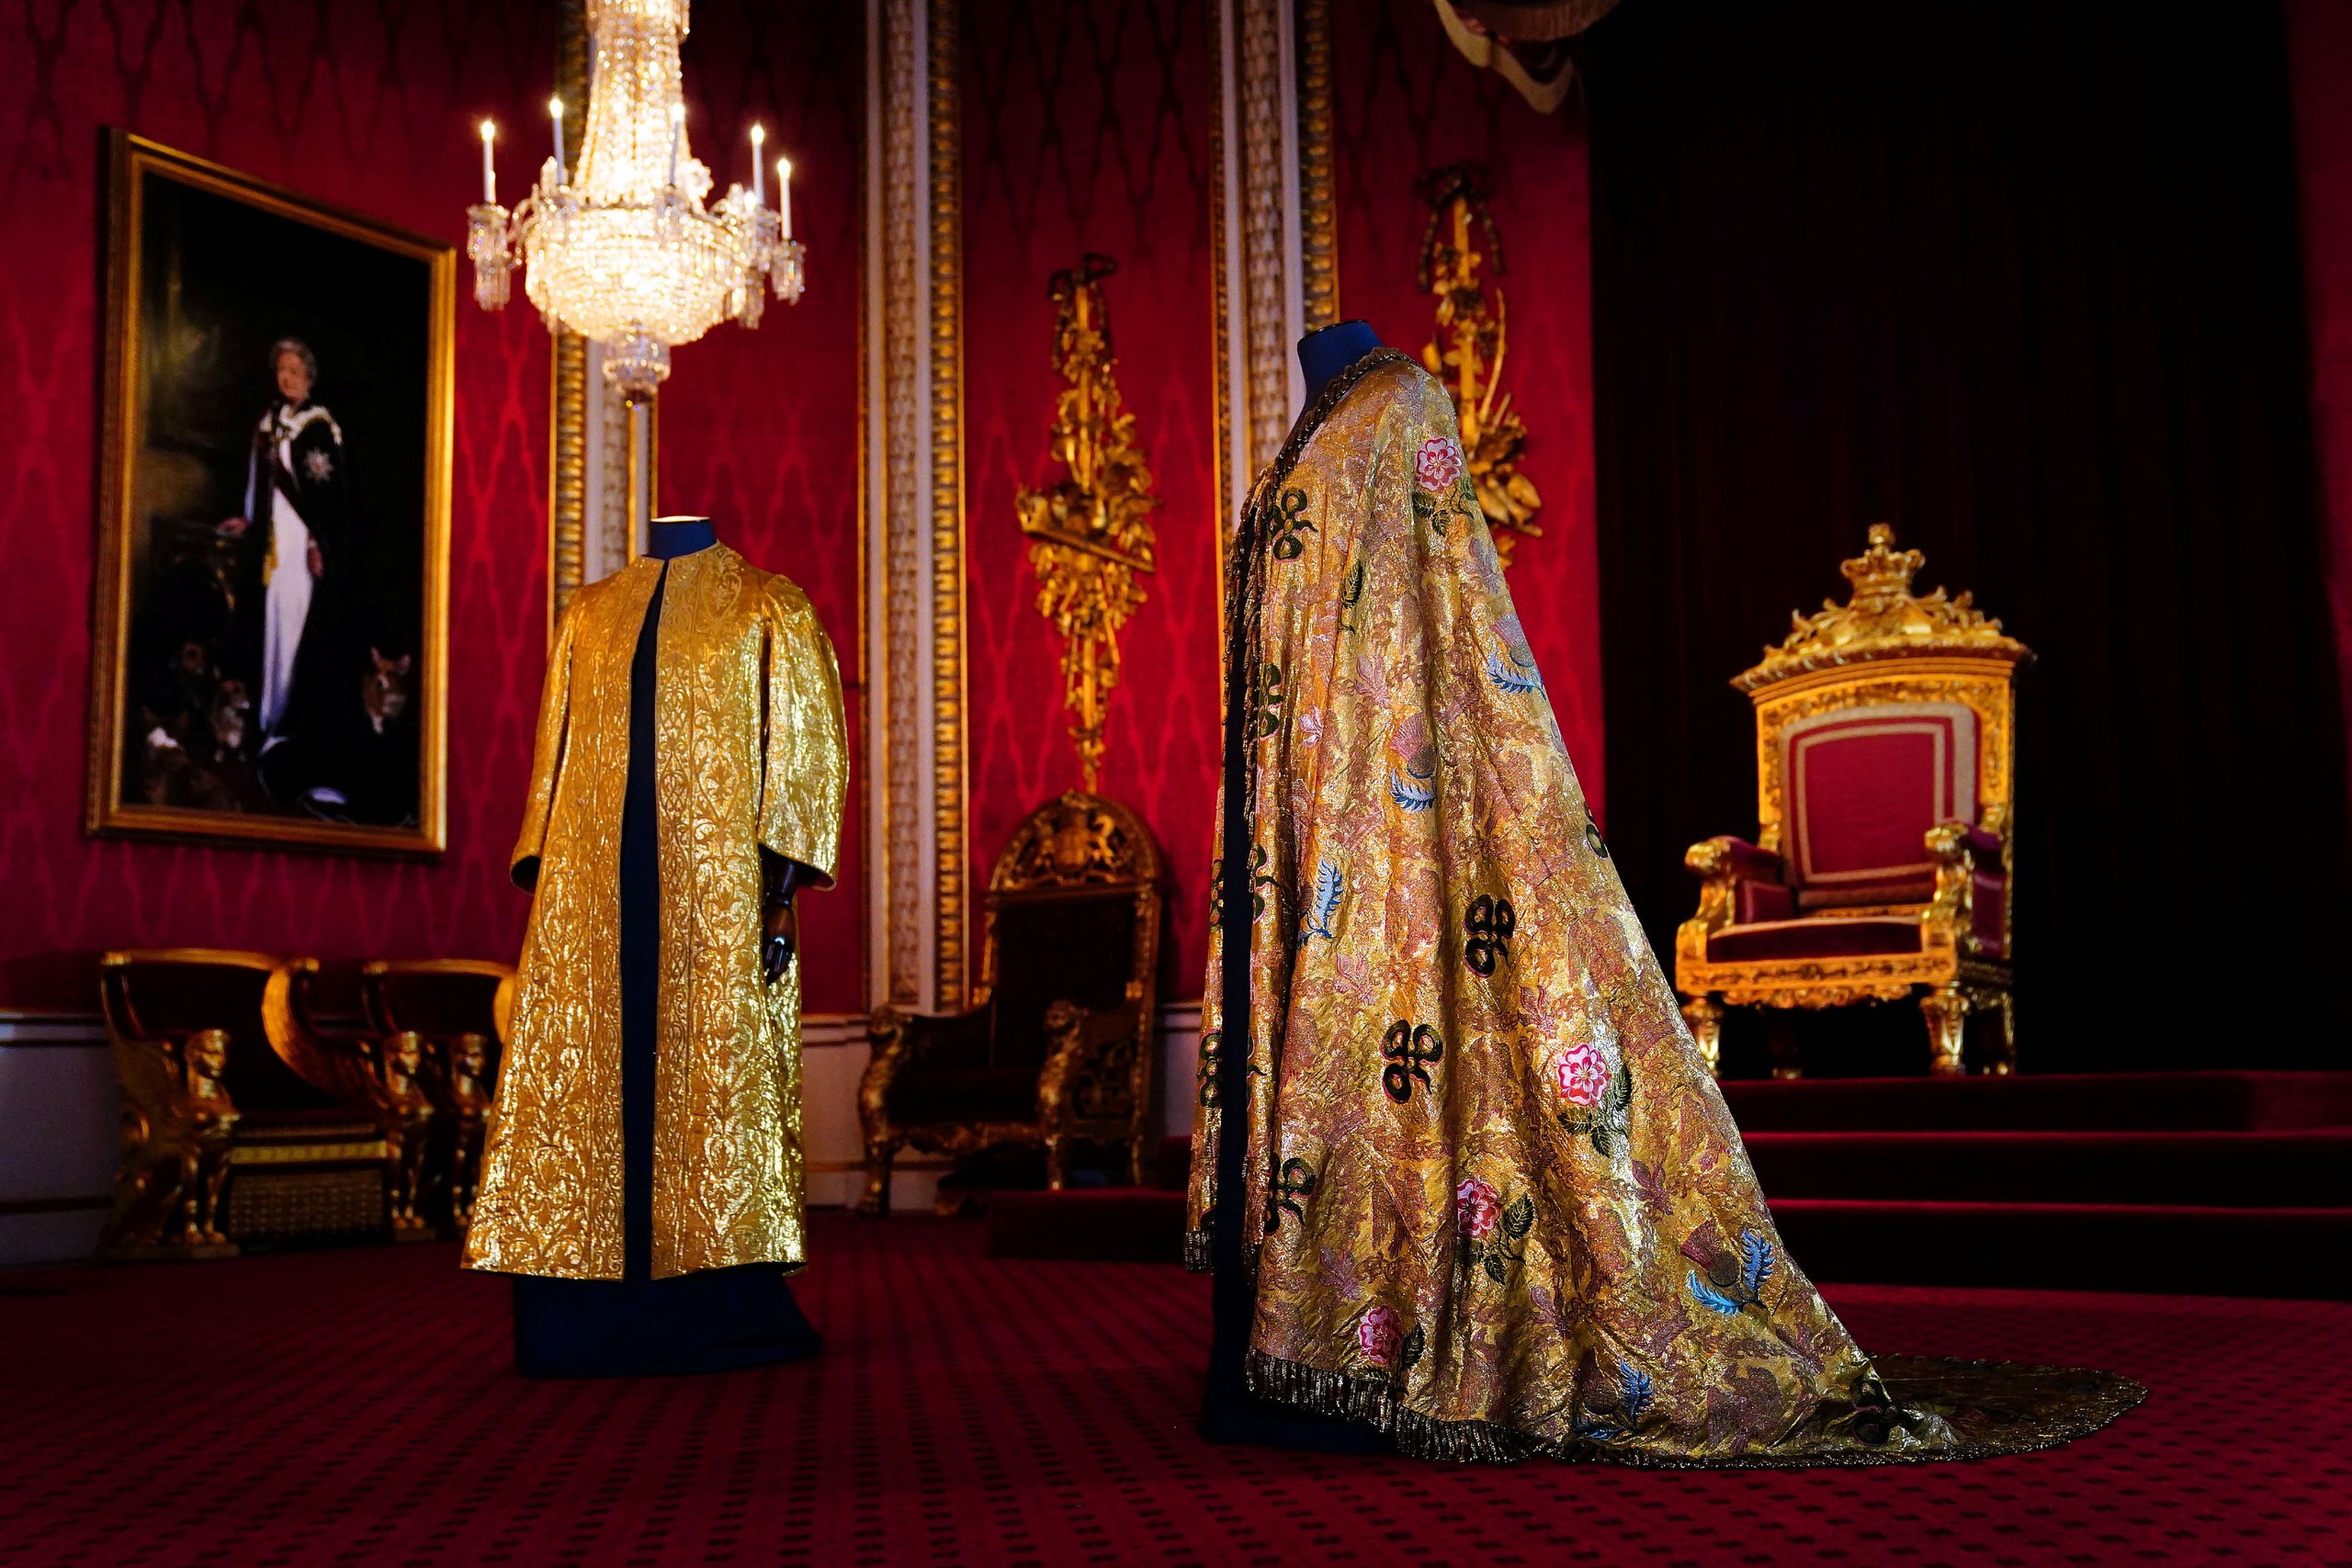 Στέψη Καρόλου: Ο χρυσοκέντητος αυτοκρατορικός μανδύας που θα φορέσει ο Κάρολος